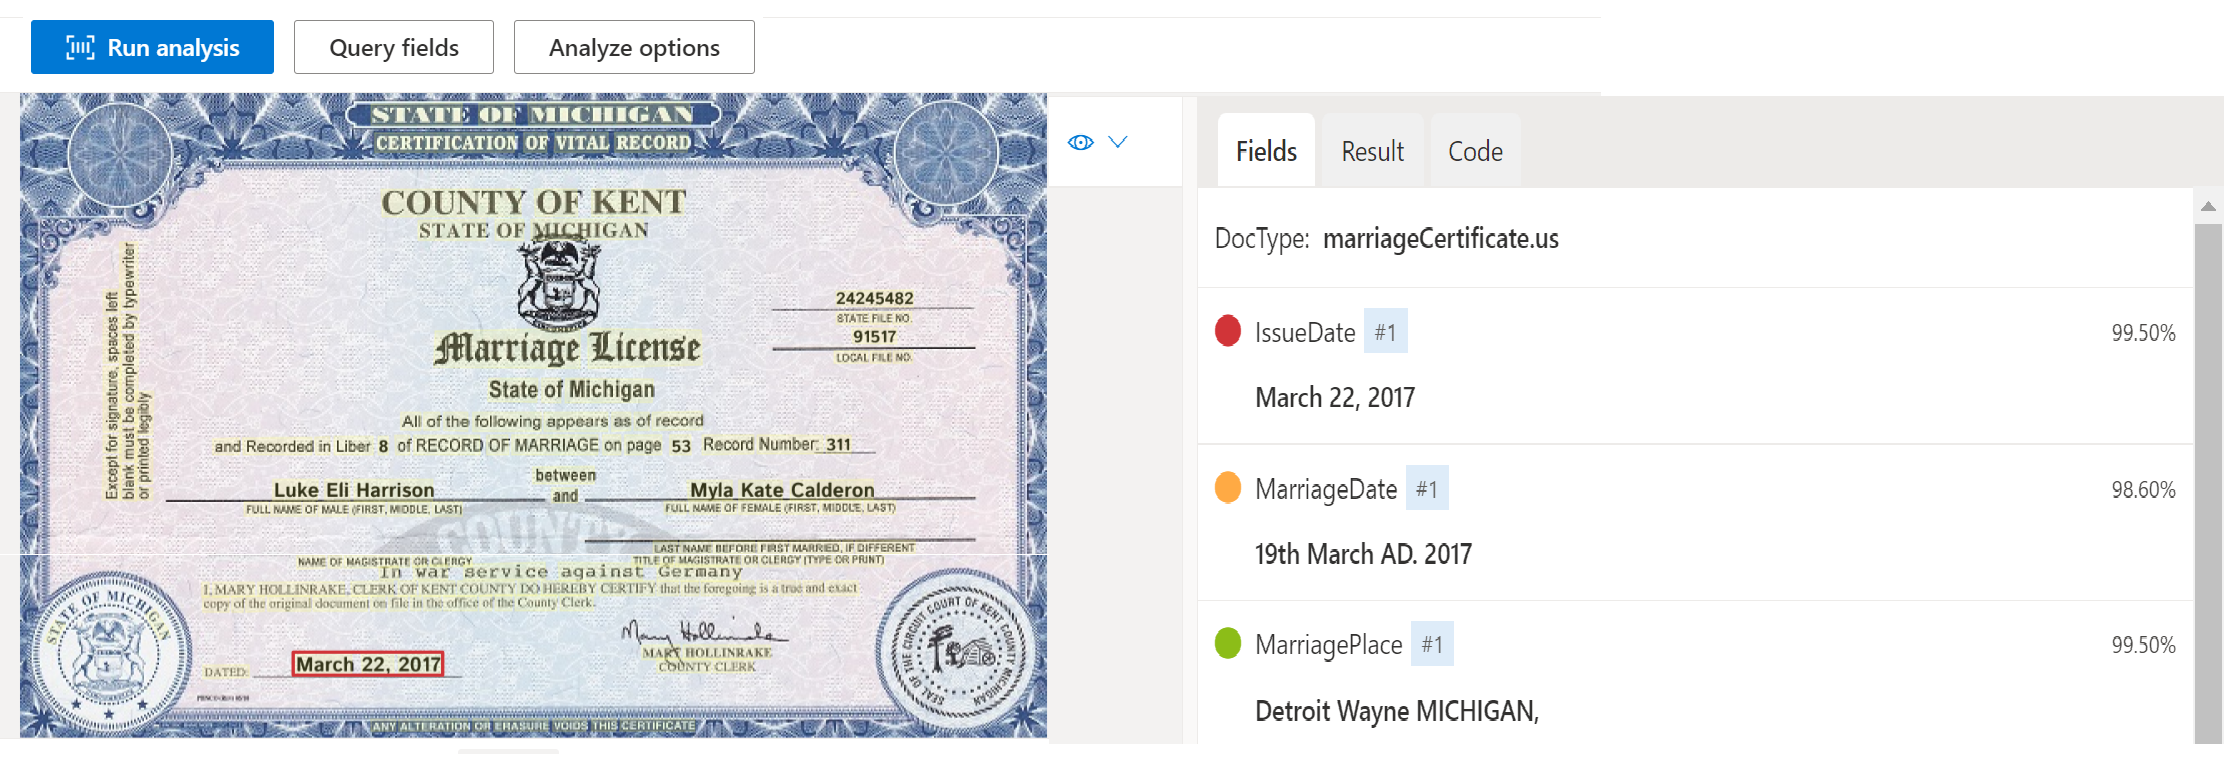 Captura de pantalla del análisis de modelos de documentos de certificado de matrimonio mediante Estudio del documento de inteligencia.